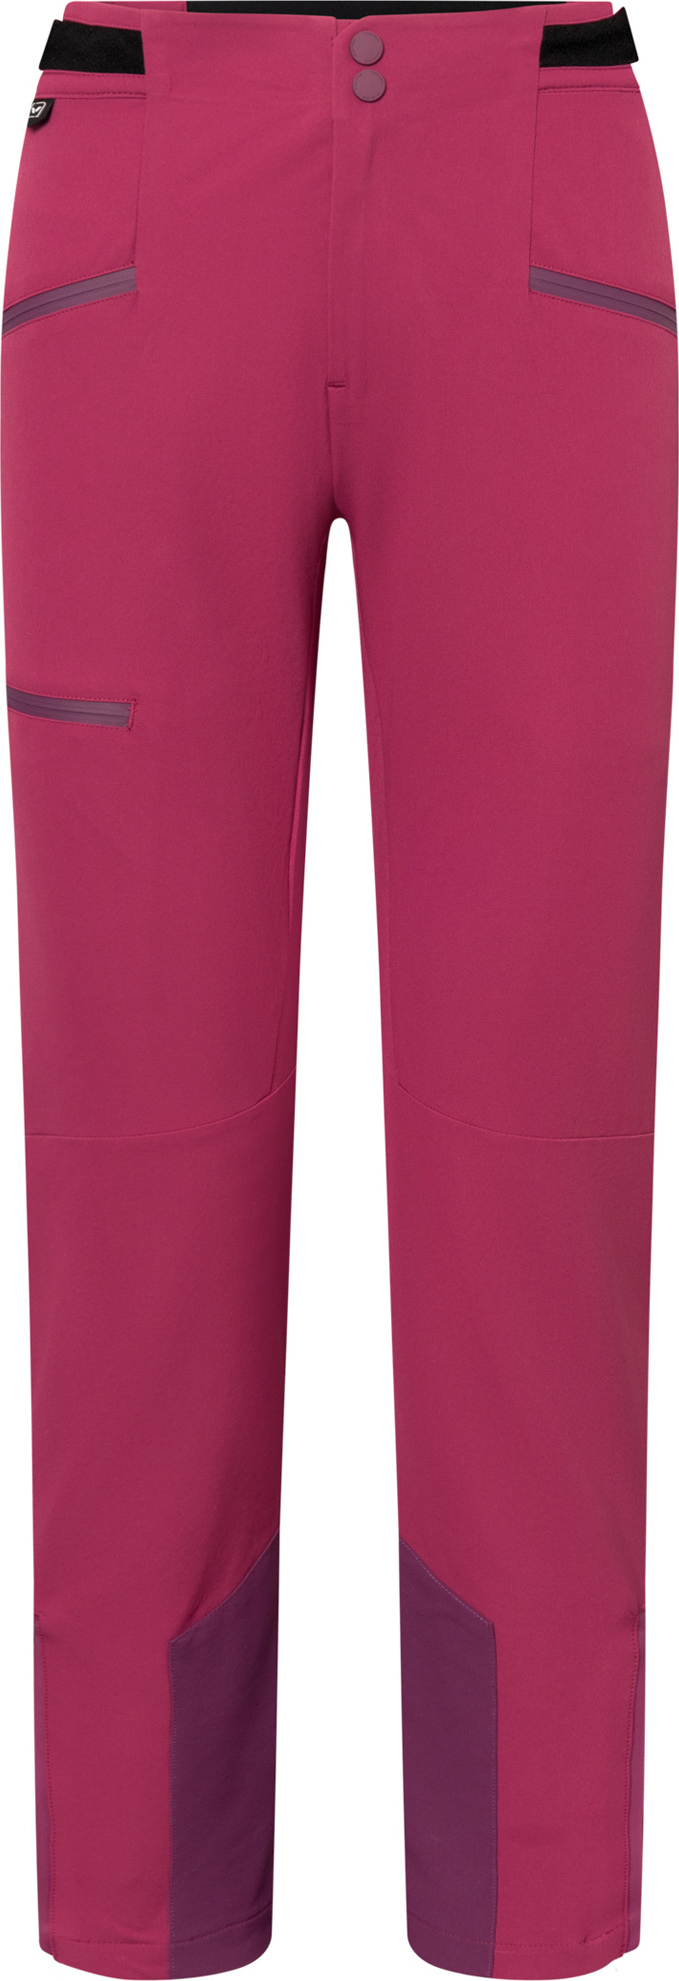 Dámské outdoorové kalhoty VIKING Expander Warm fialová Velikost: M